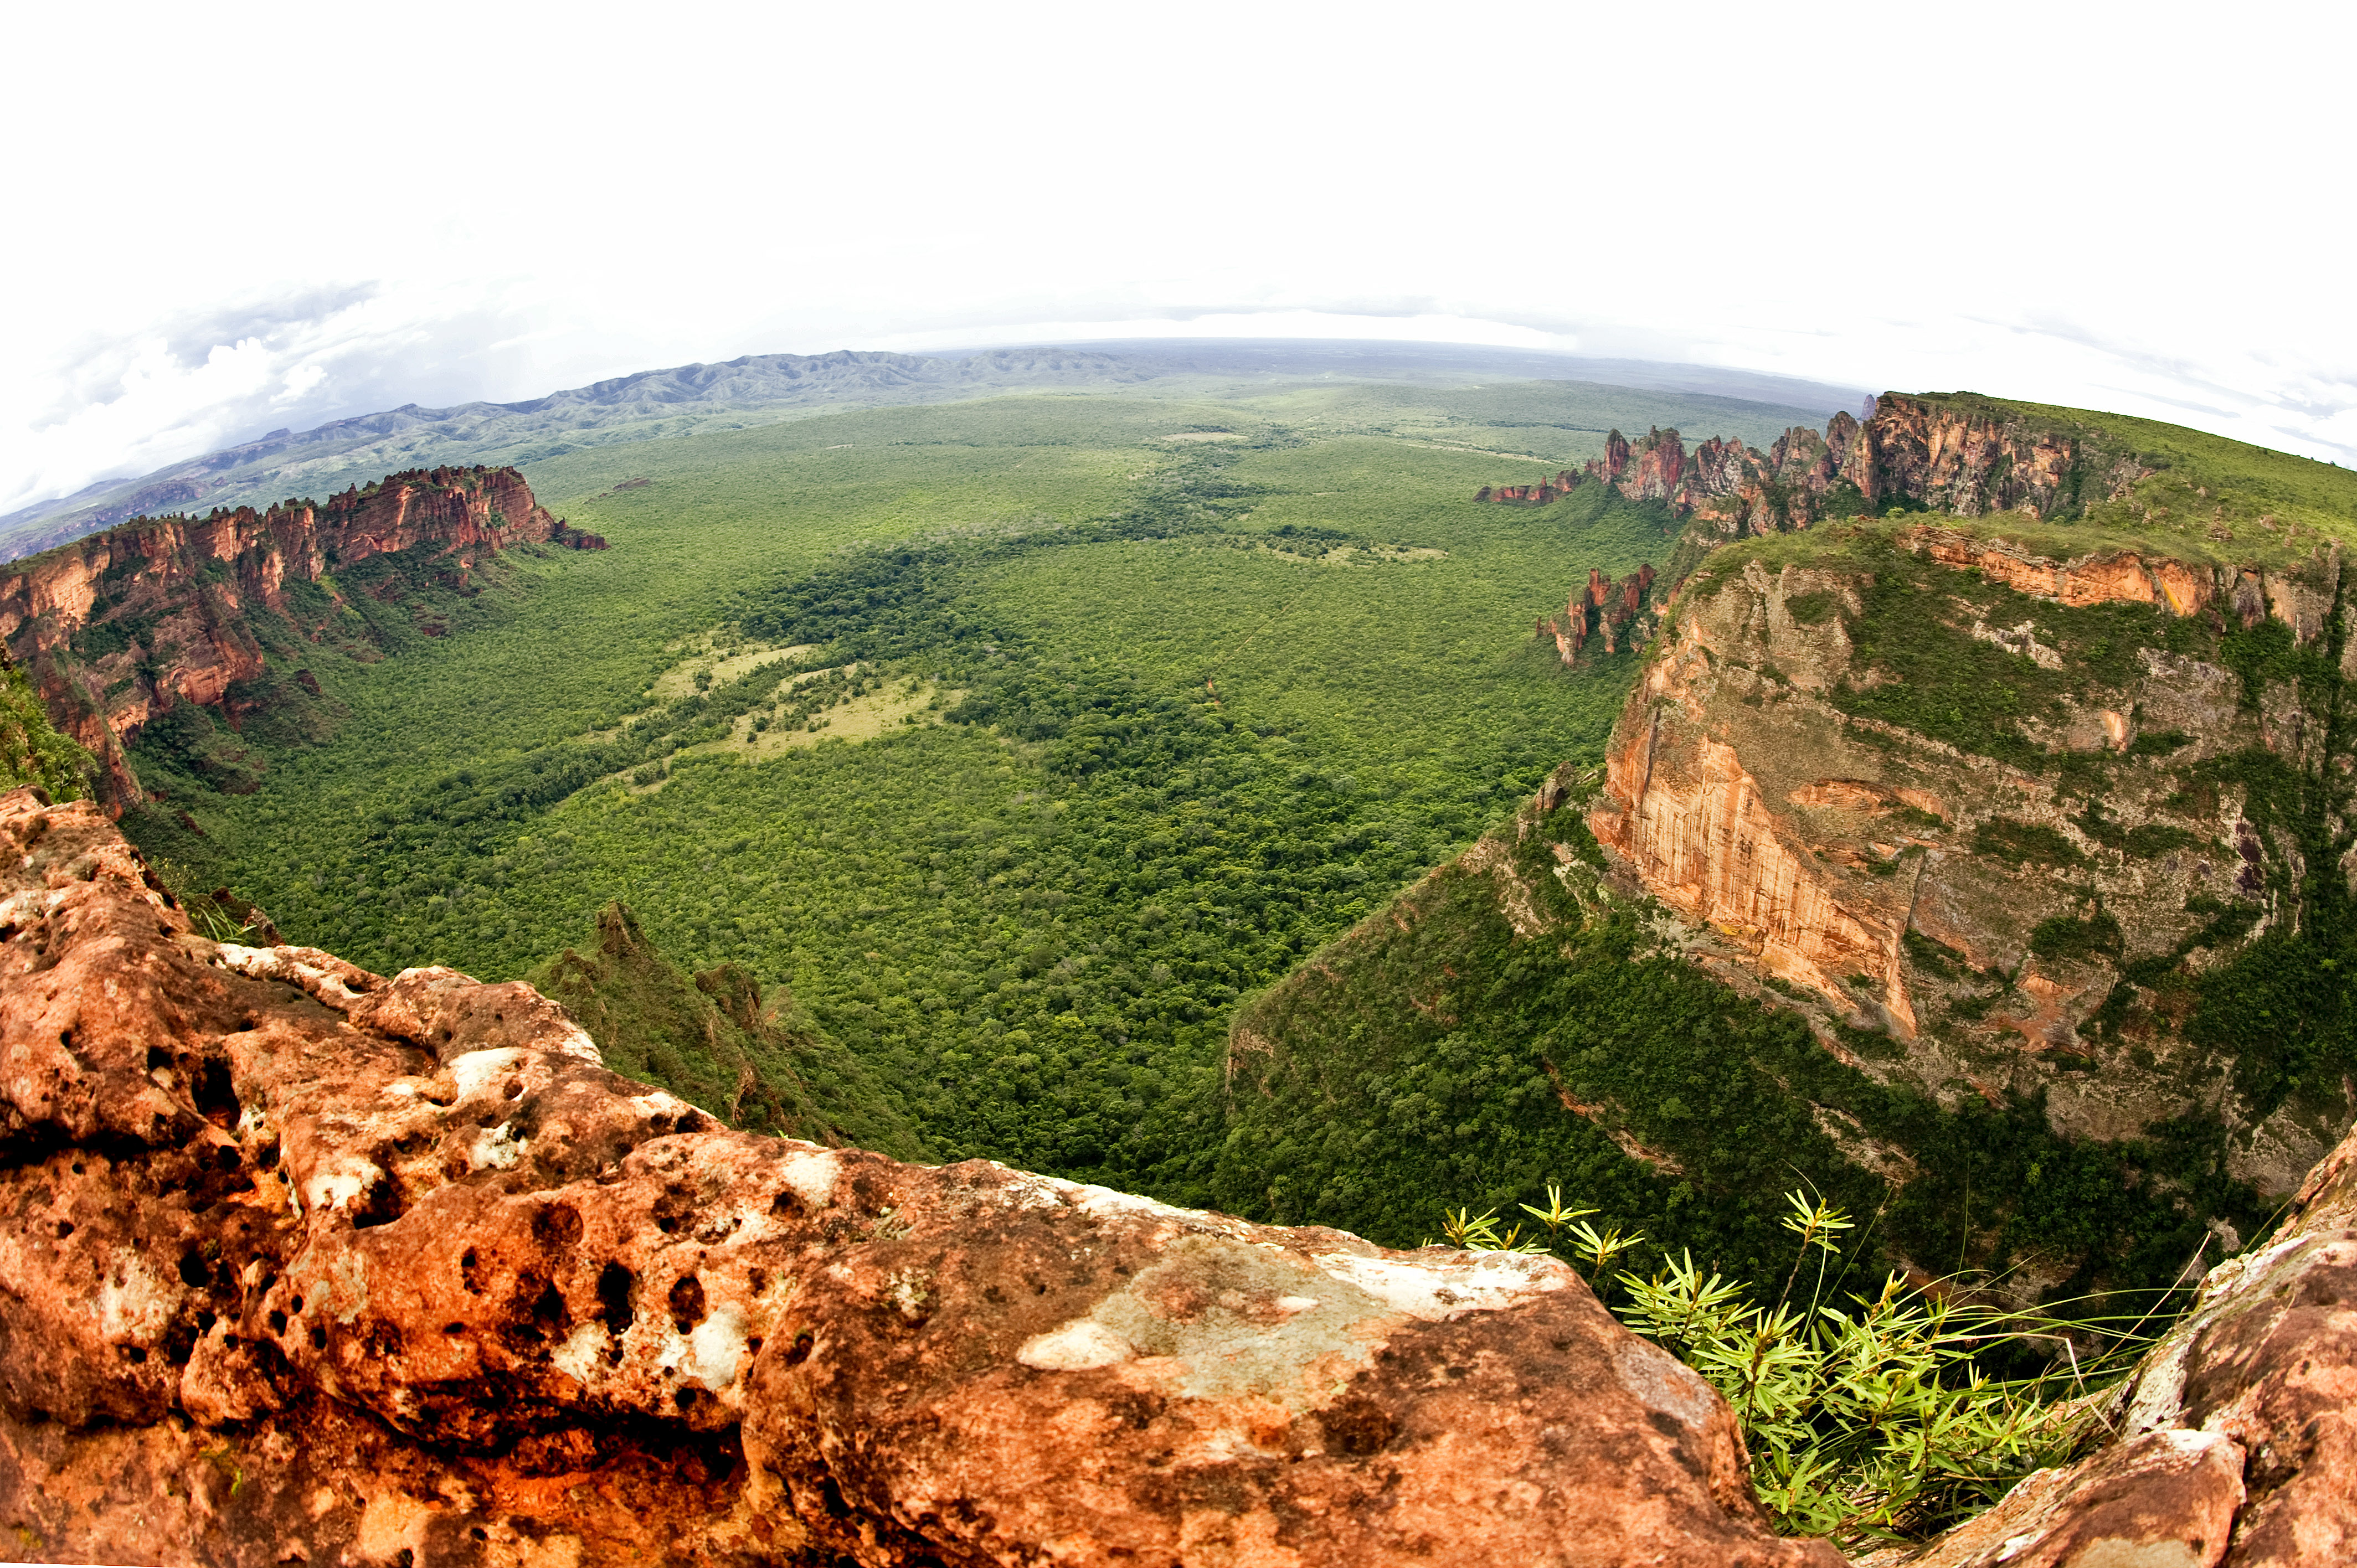 Unidades de conservação como o parque nacional da Chapada dos Guimarães são fundamentais para a sobrevivência do Pantanal